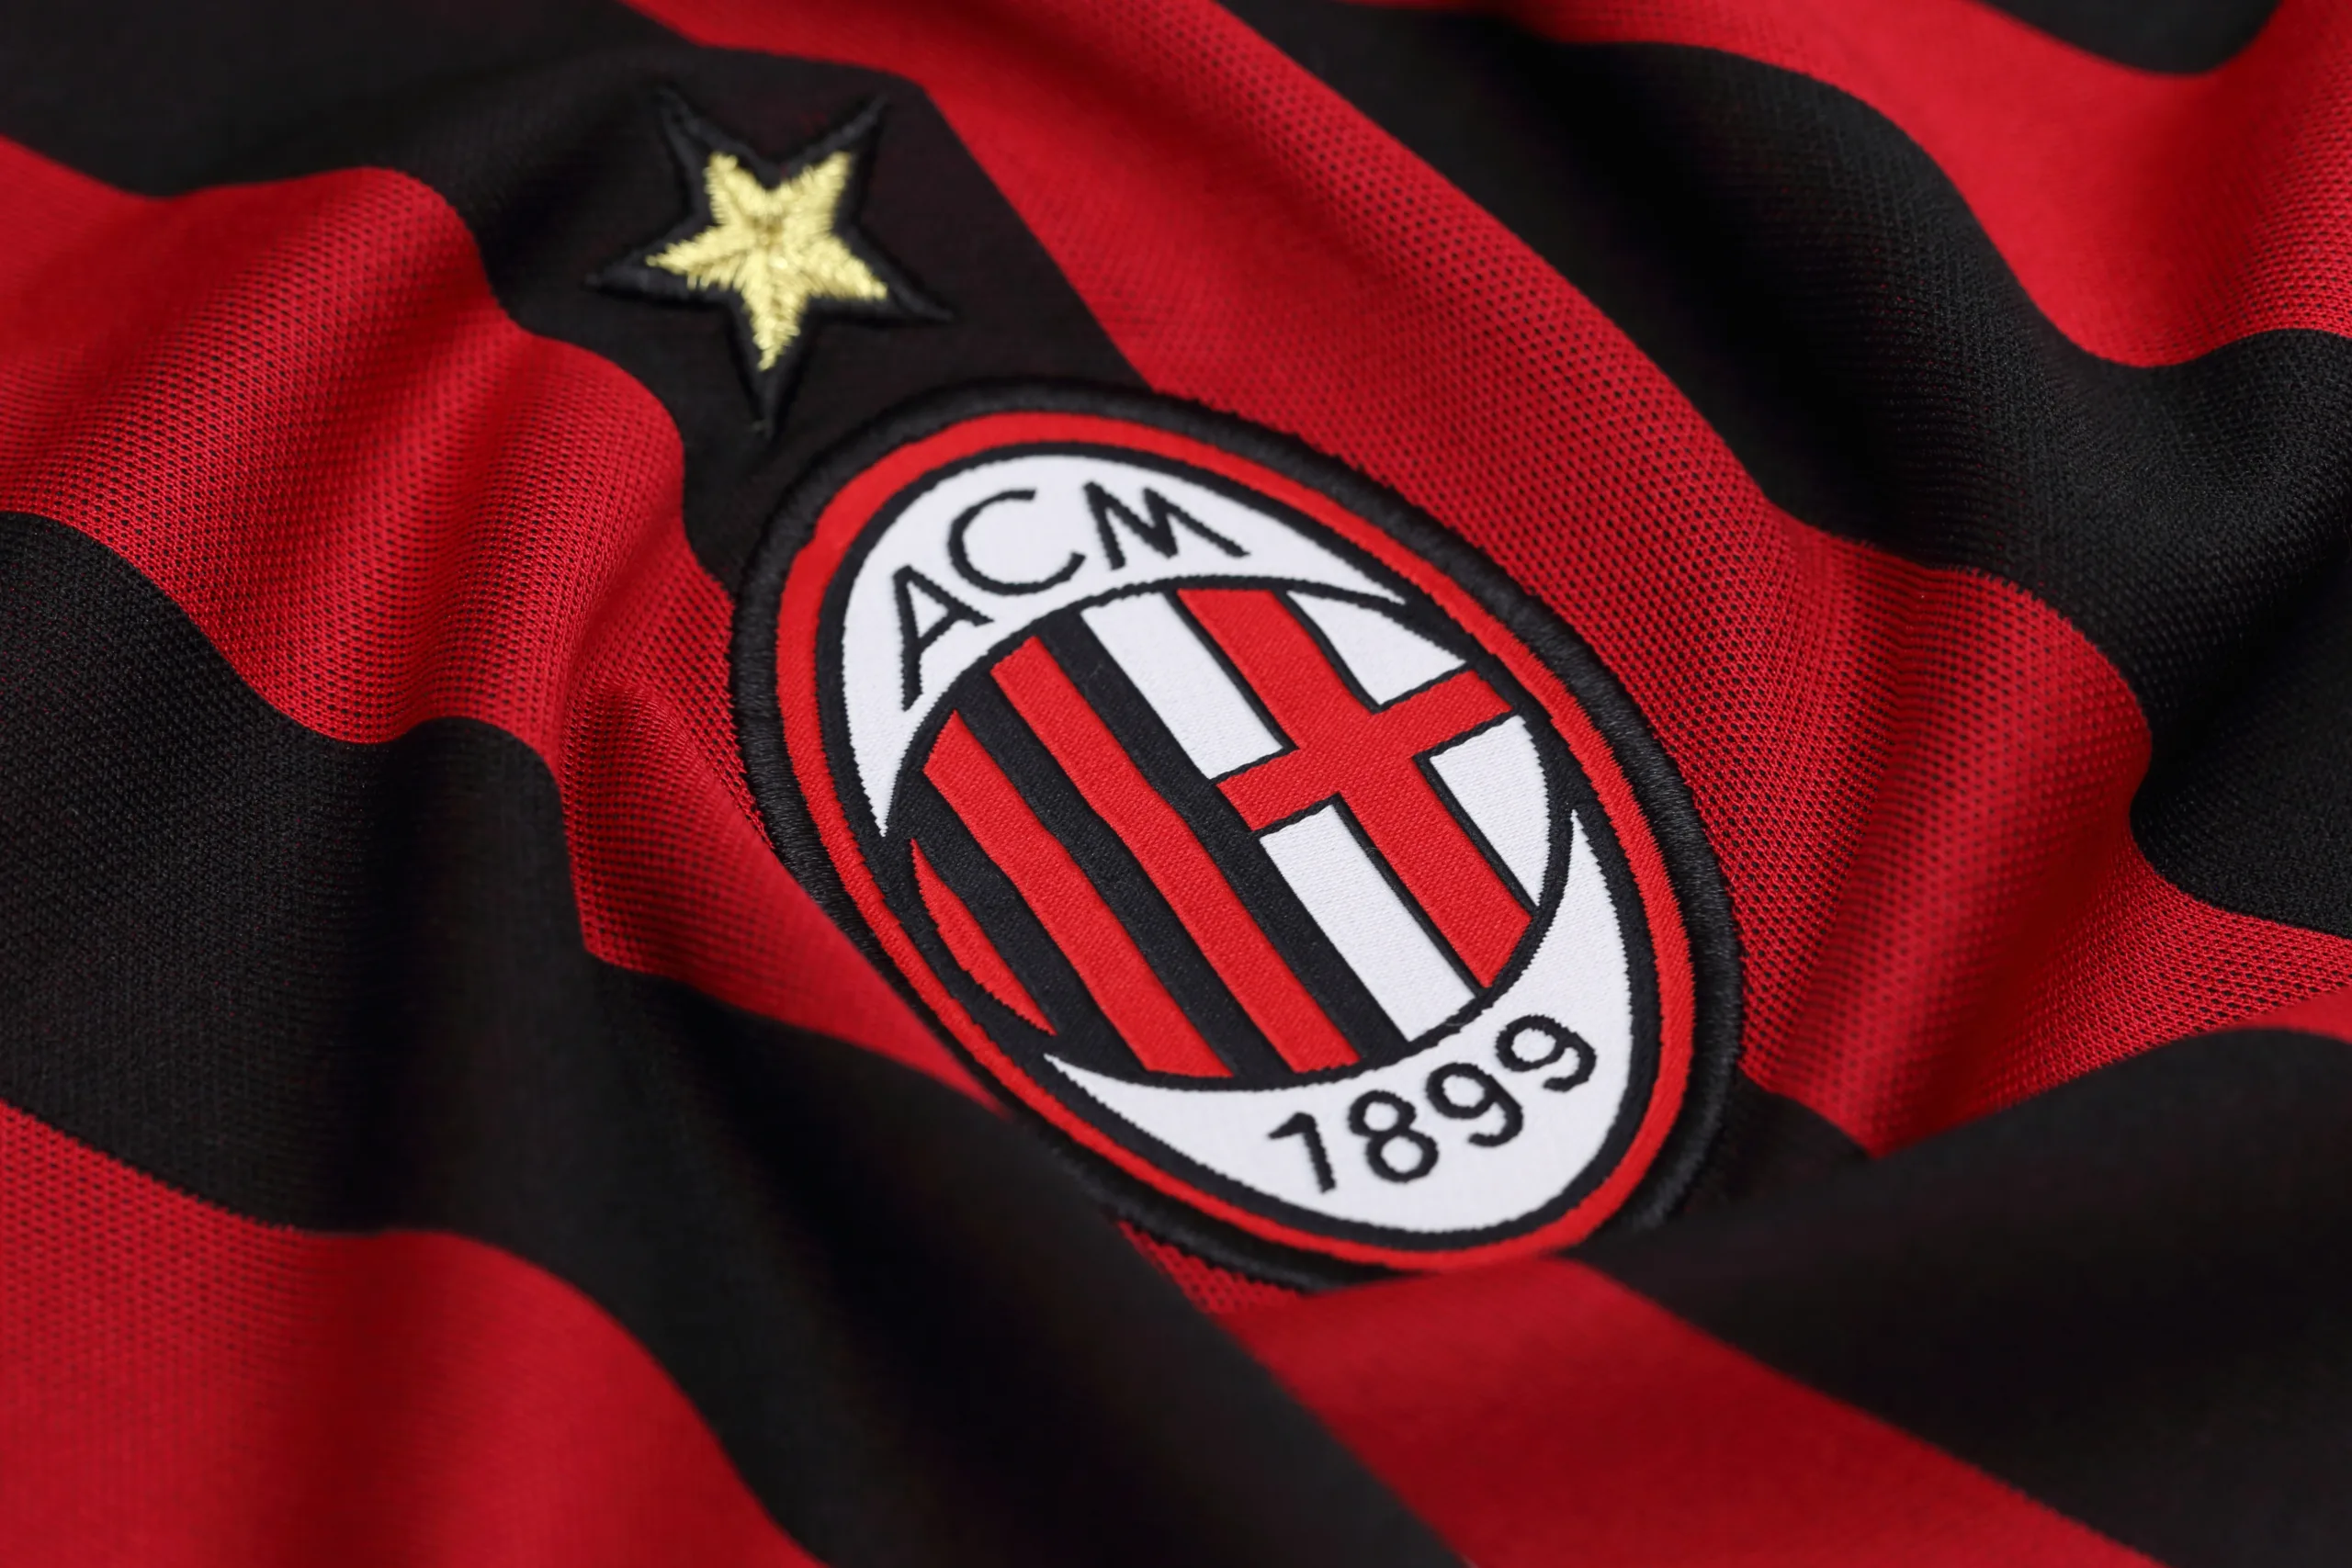 AC Milan badge